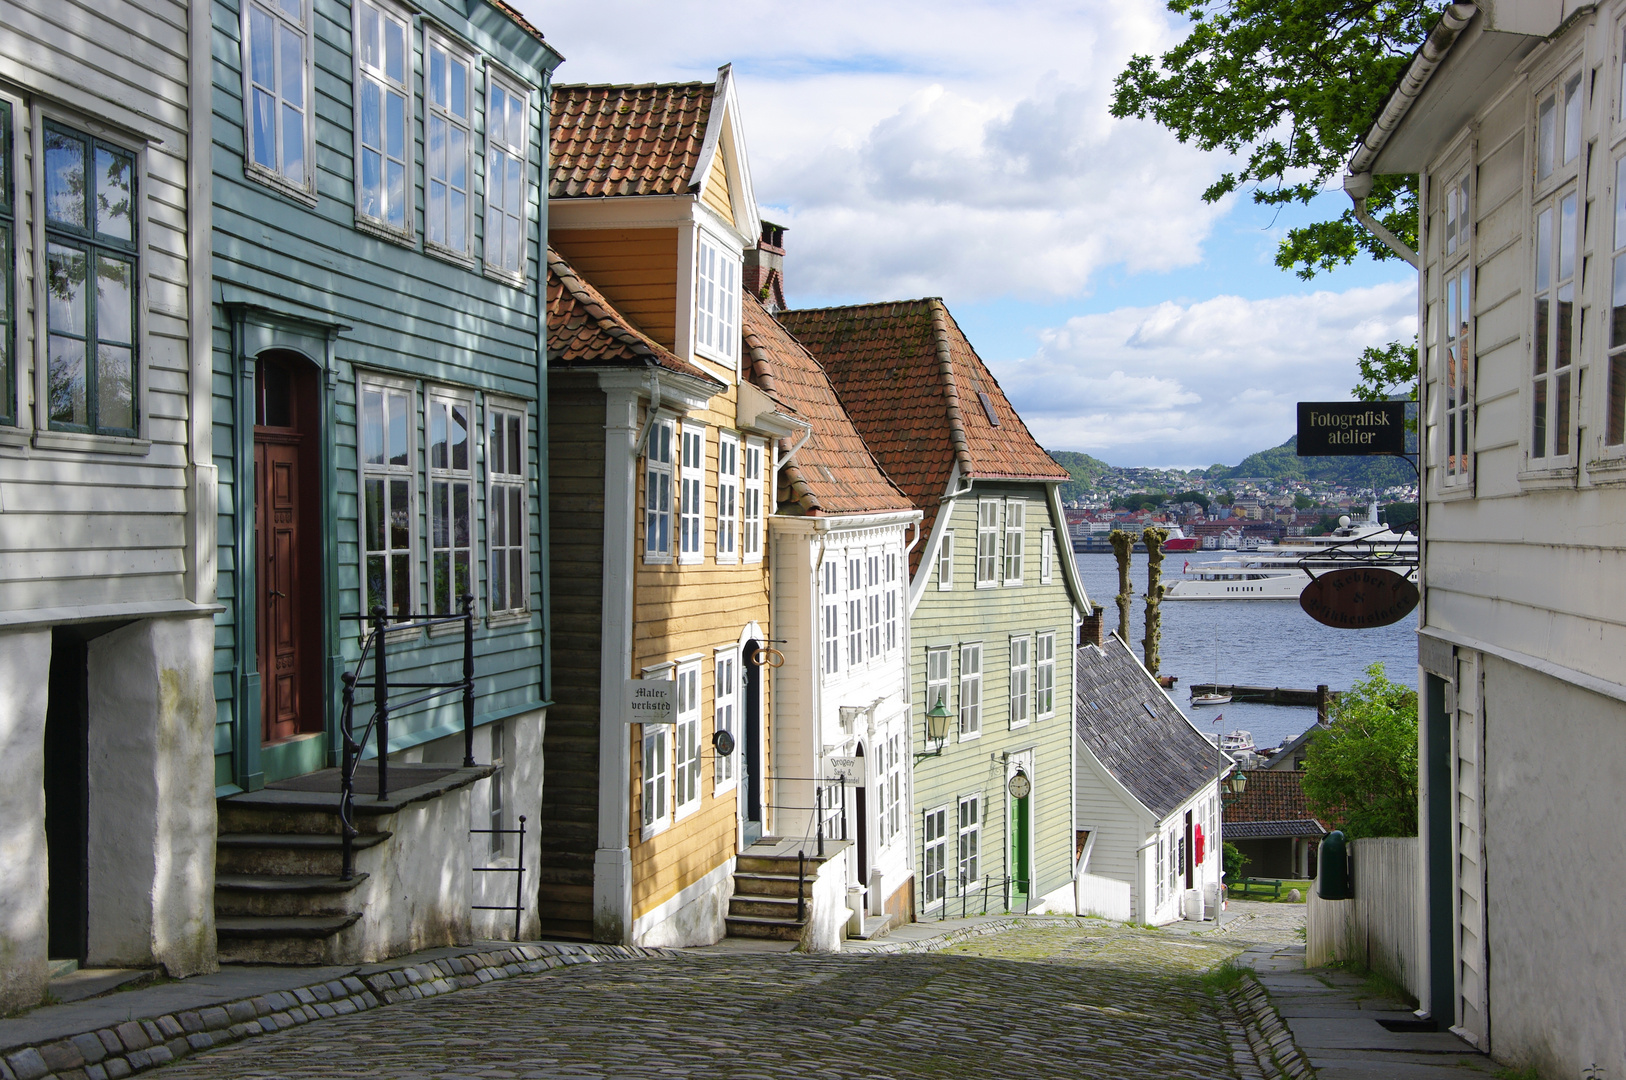 Blick durch eine Altstadtgasse in Bergen (Norwegen)